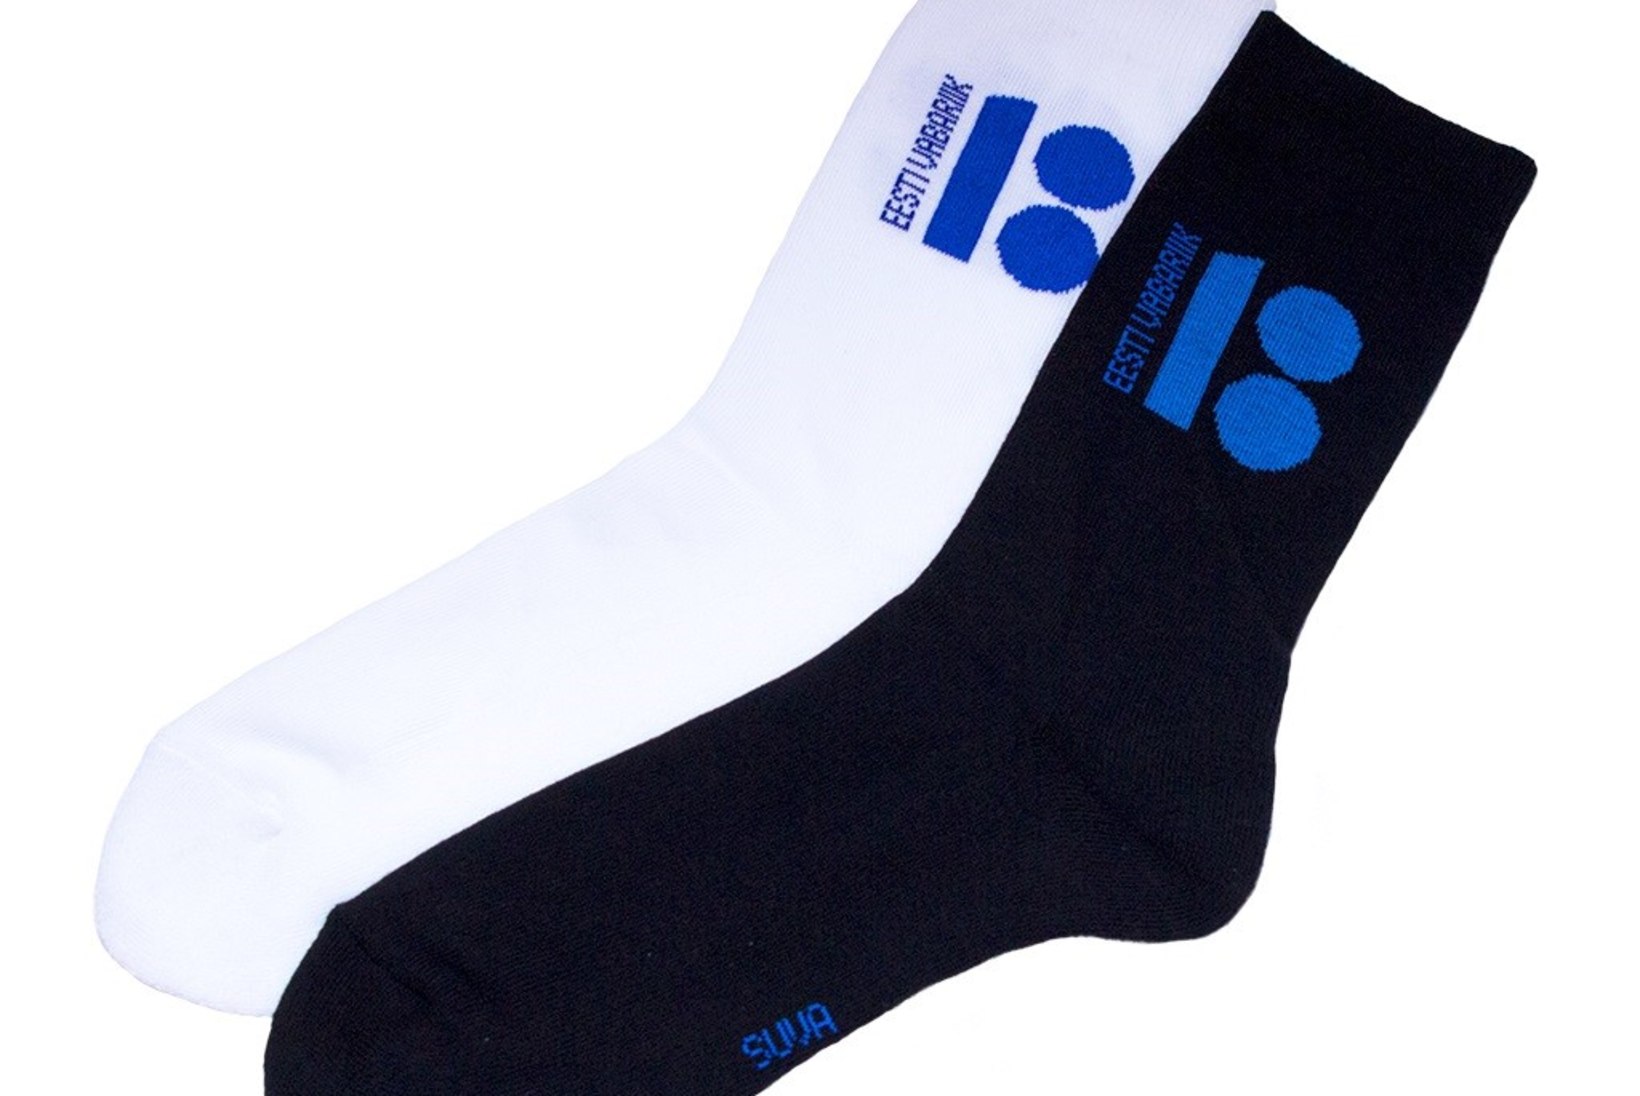 Suva sokivabrik annetab EV100 kujundusega sokkidega müügist osa raha jälgimismonitoride ostmiseks